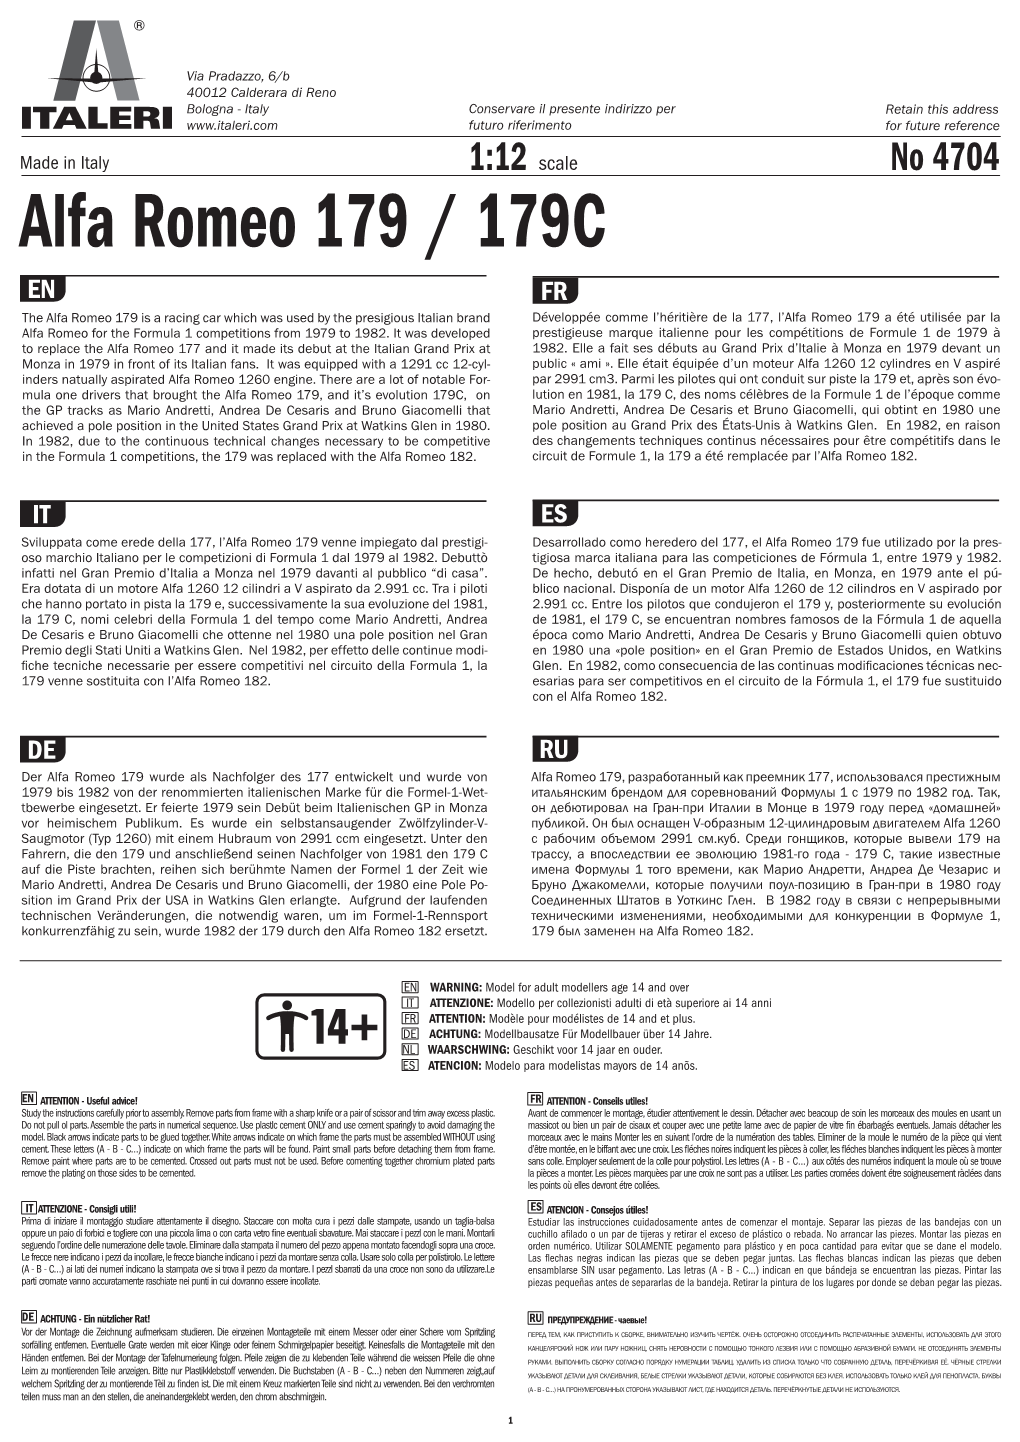 Alfa Romeo 179 / 179C